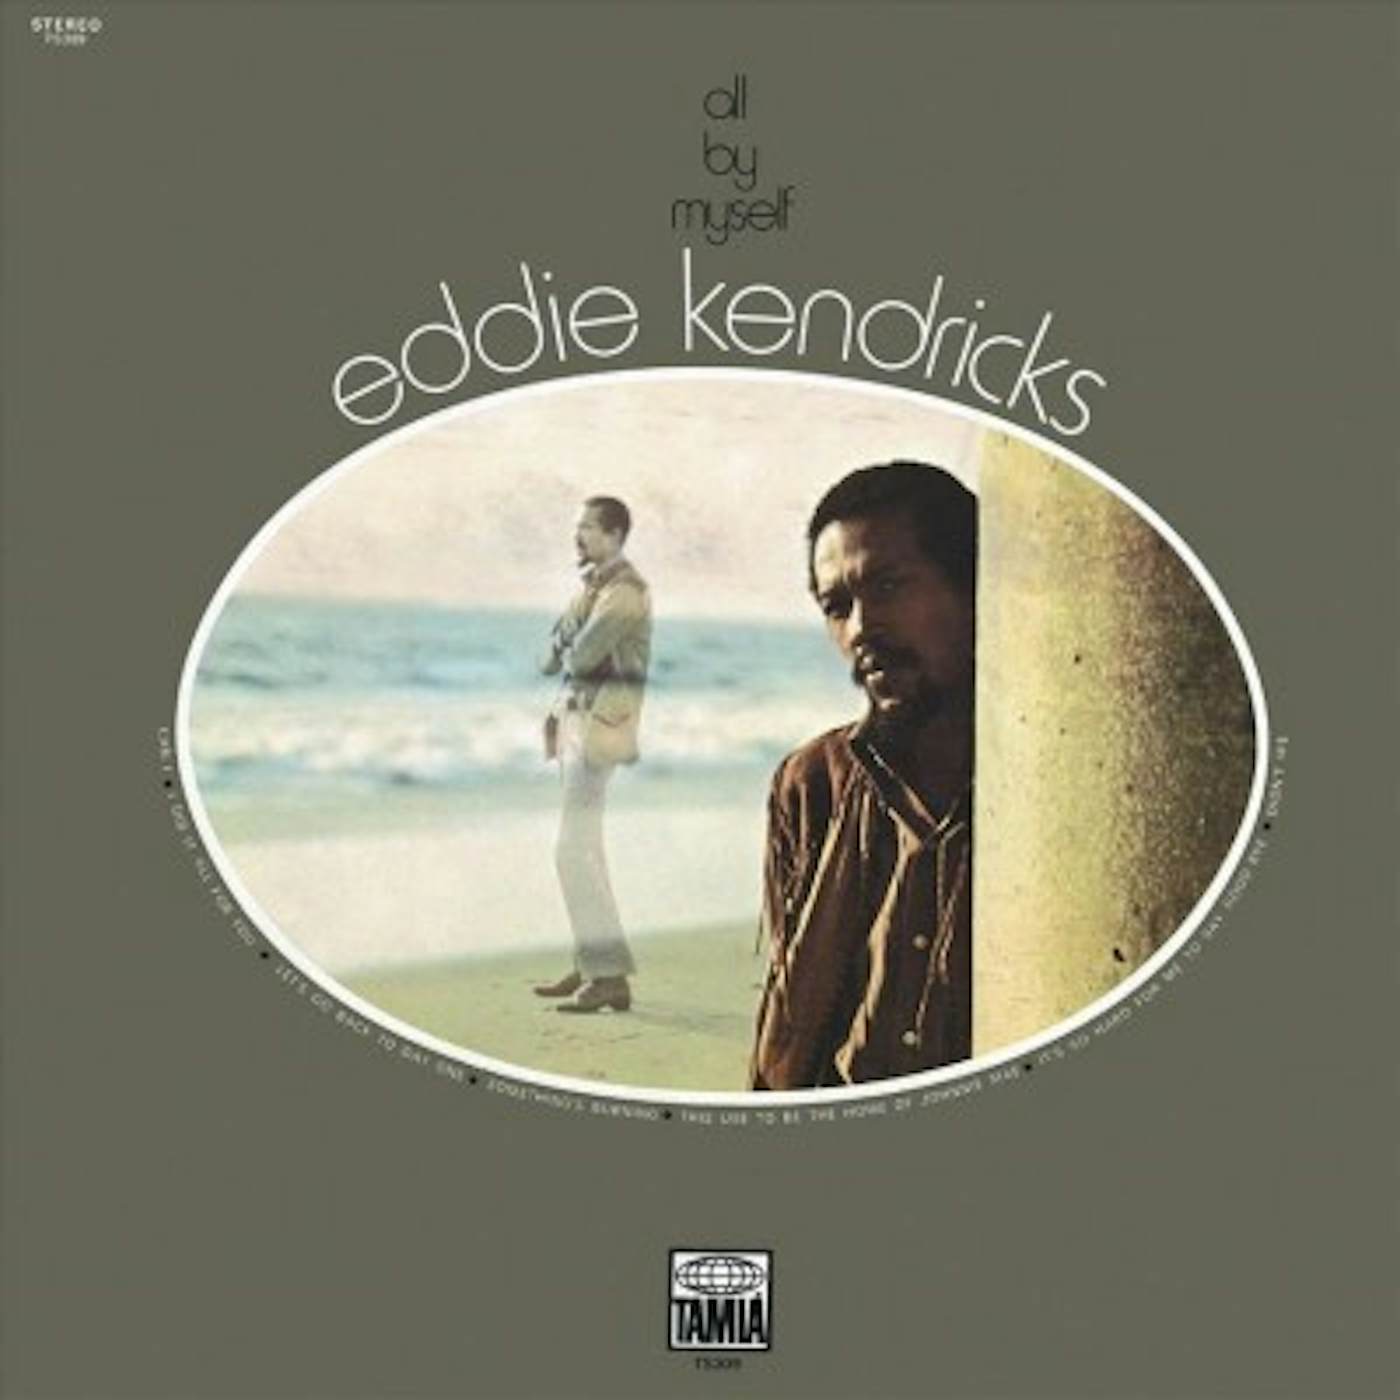 Eddie Kendricks All By Myself CD